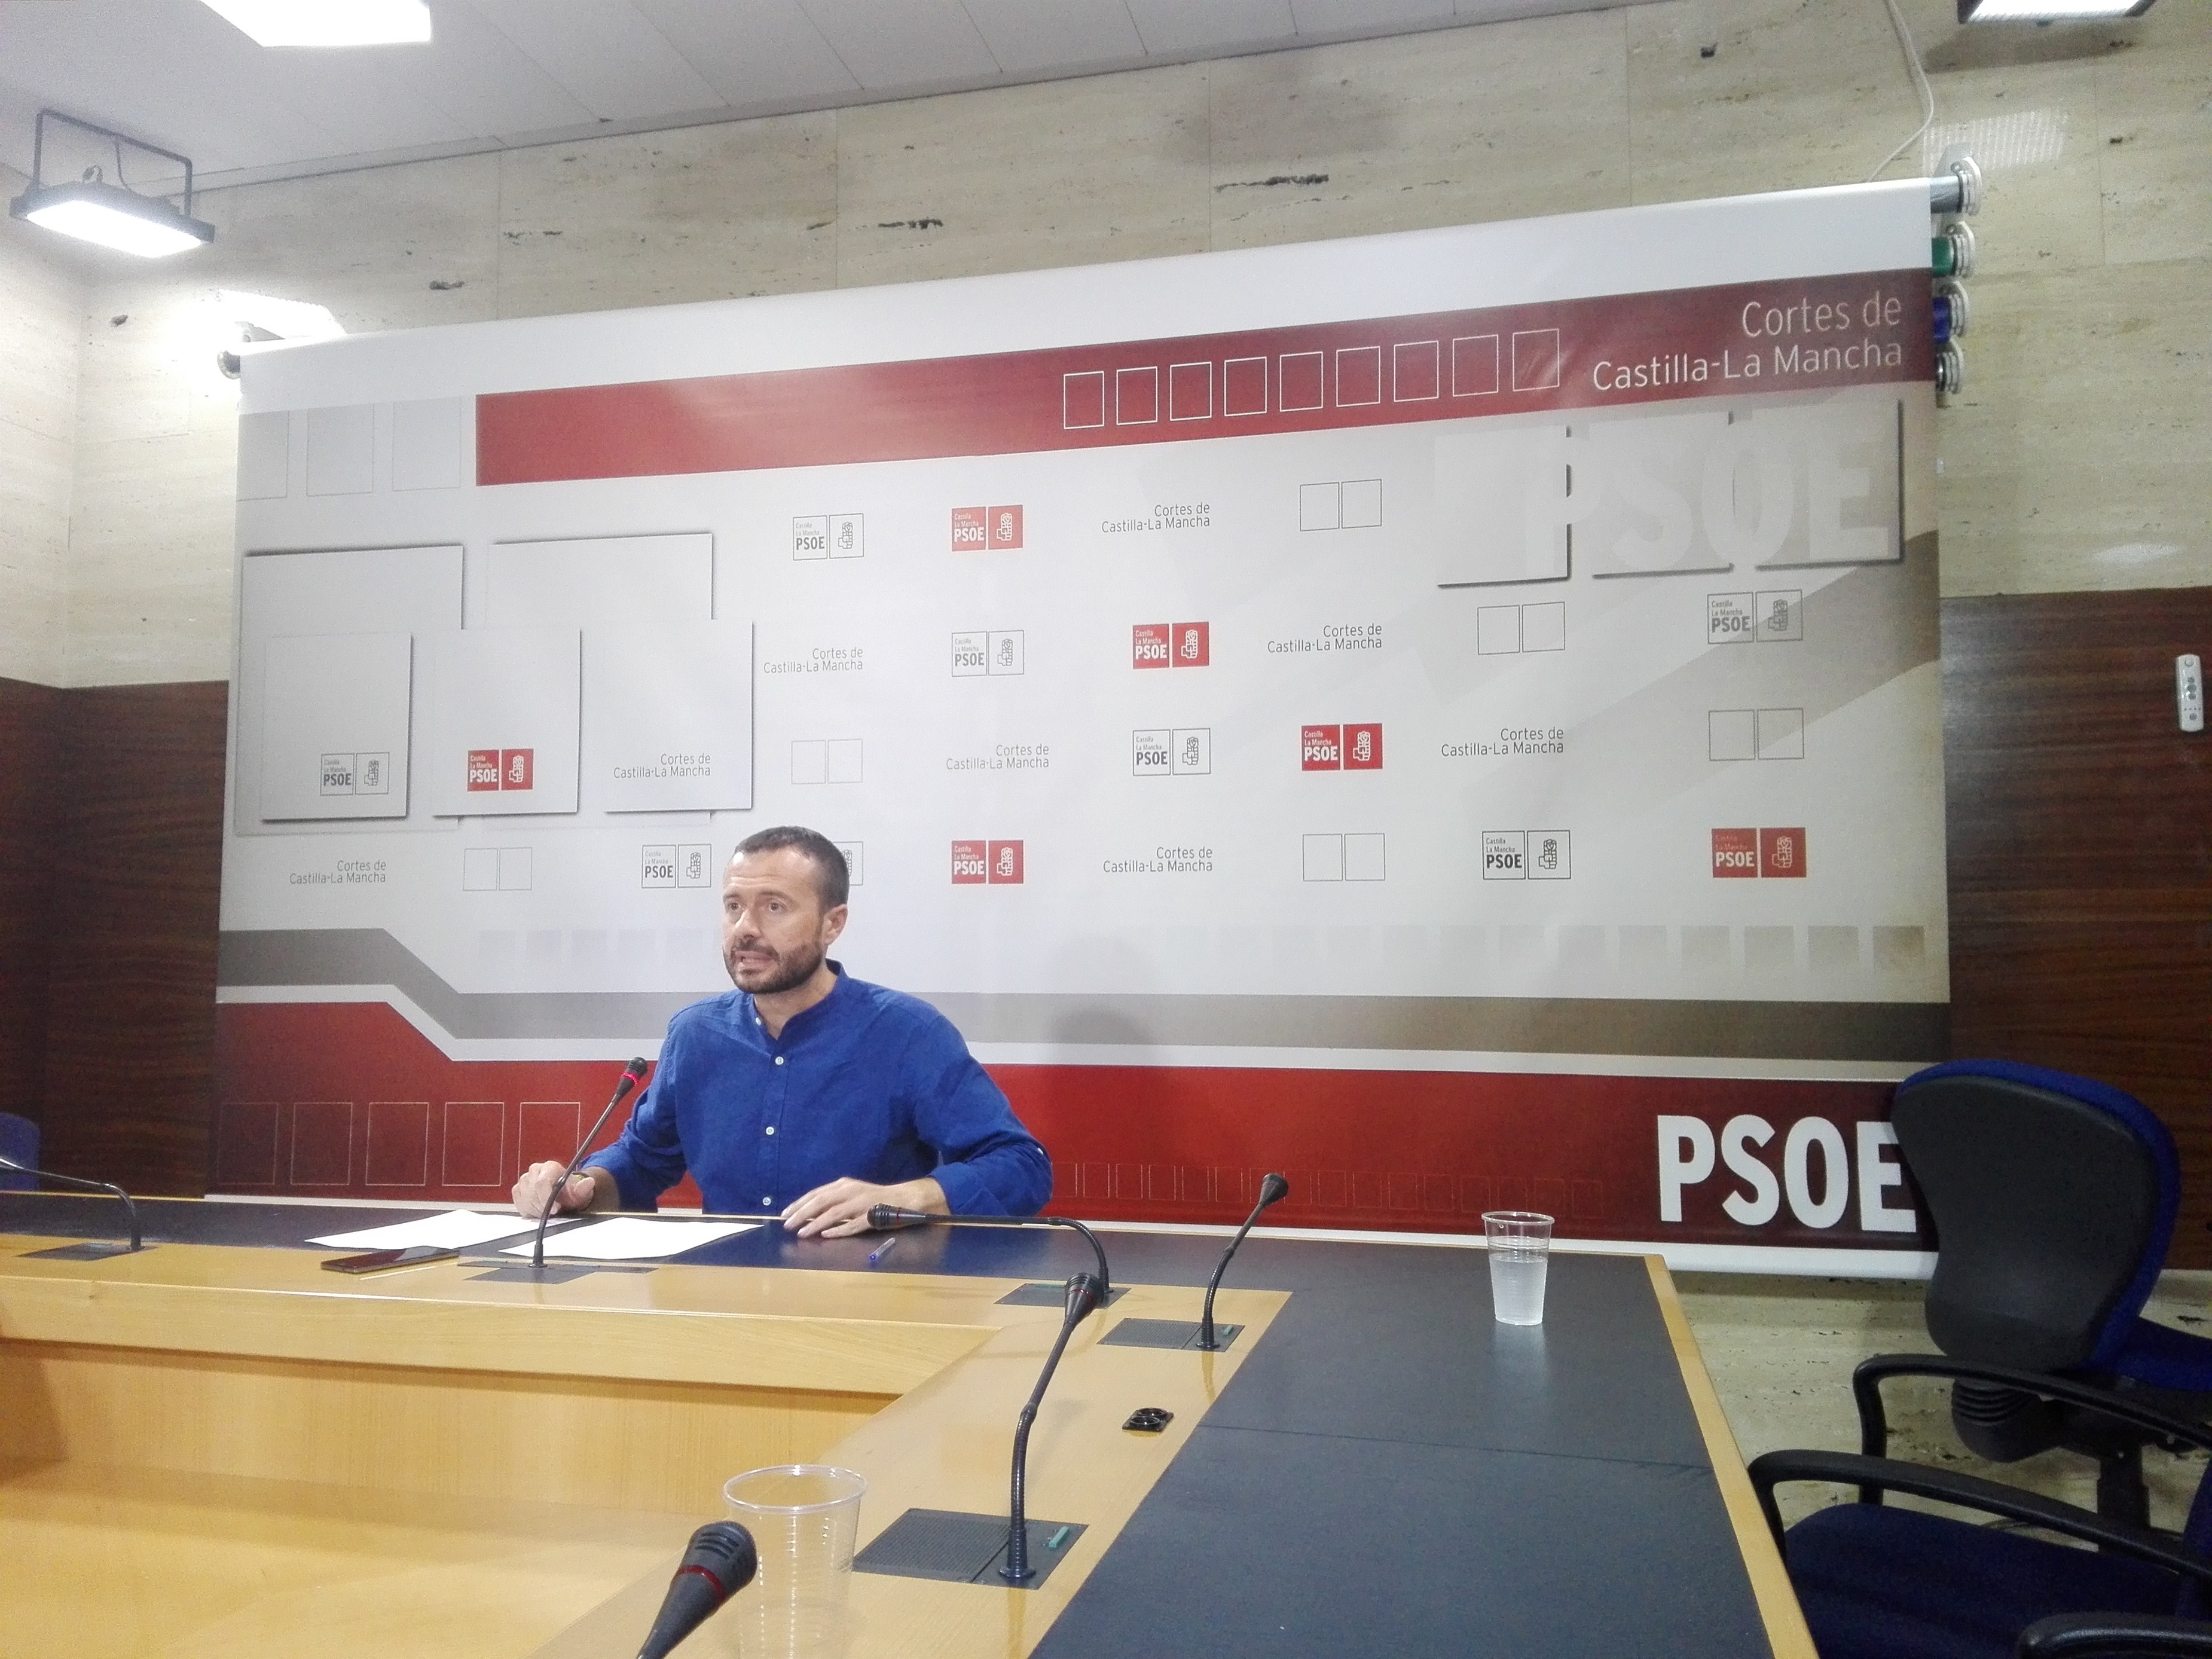 PSOE C-LM cree que PP “paraliza” la región porque se ha “contagiado” de la canción del verano y quiere todo “despacito”